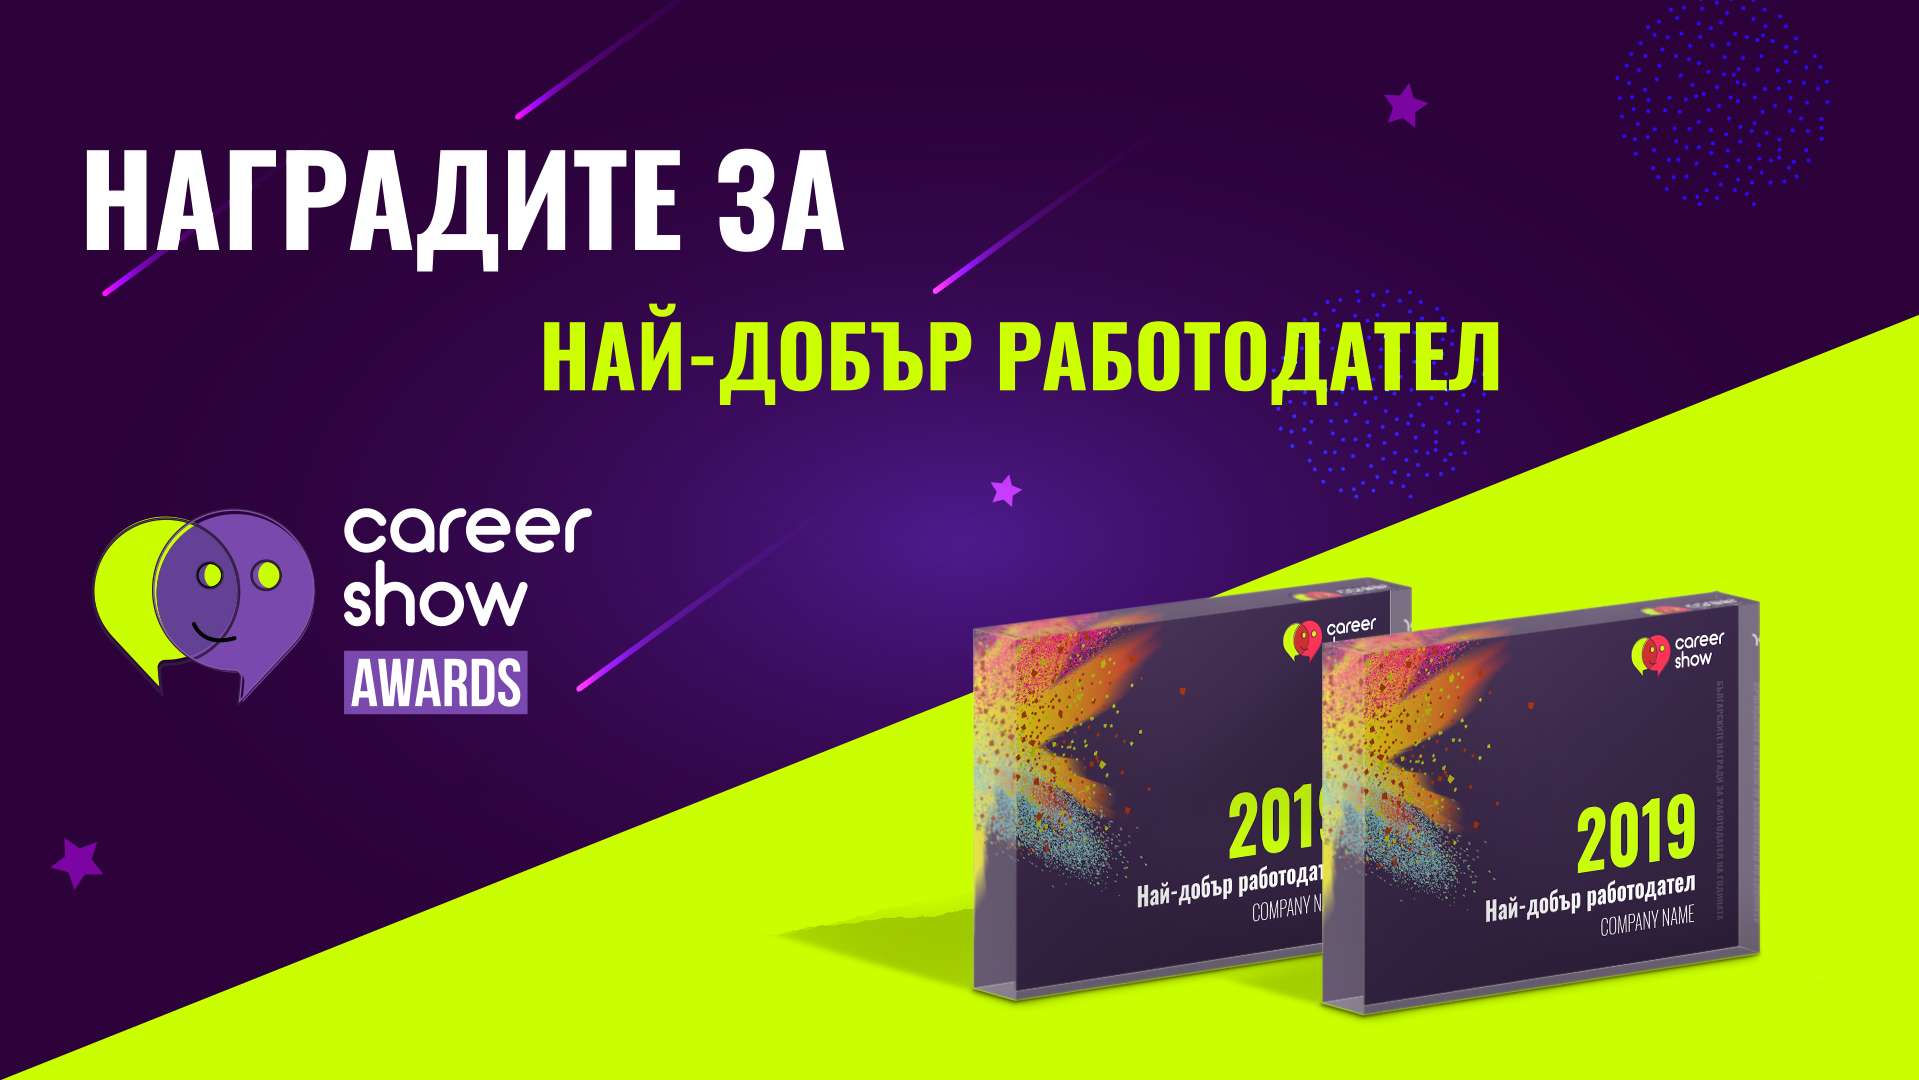 Най-добрите работодатели на България за 2019 са известни